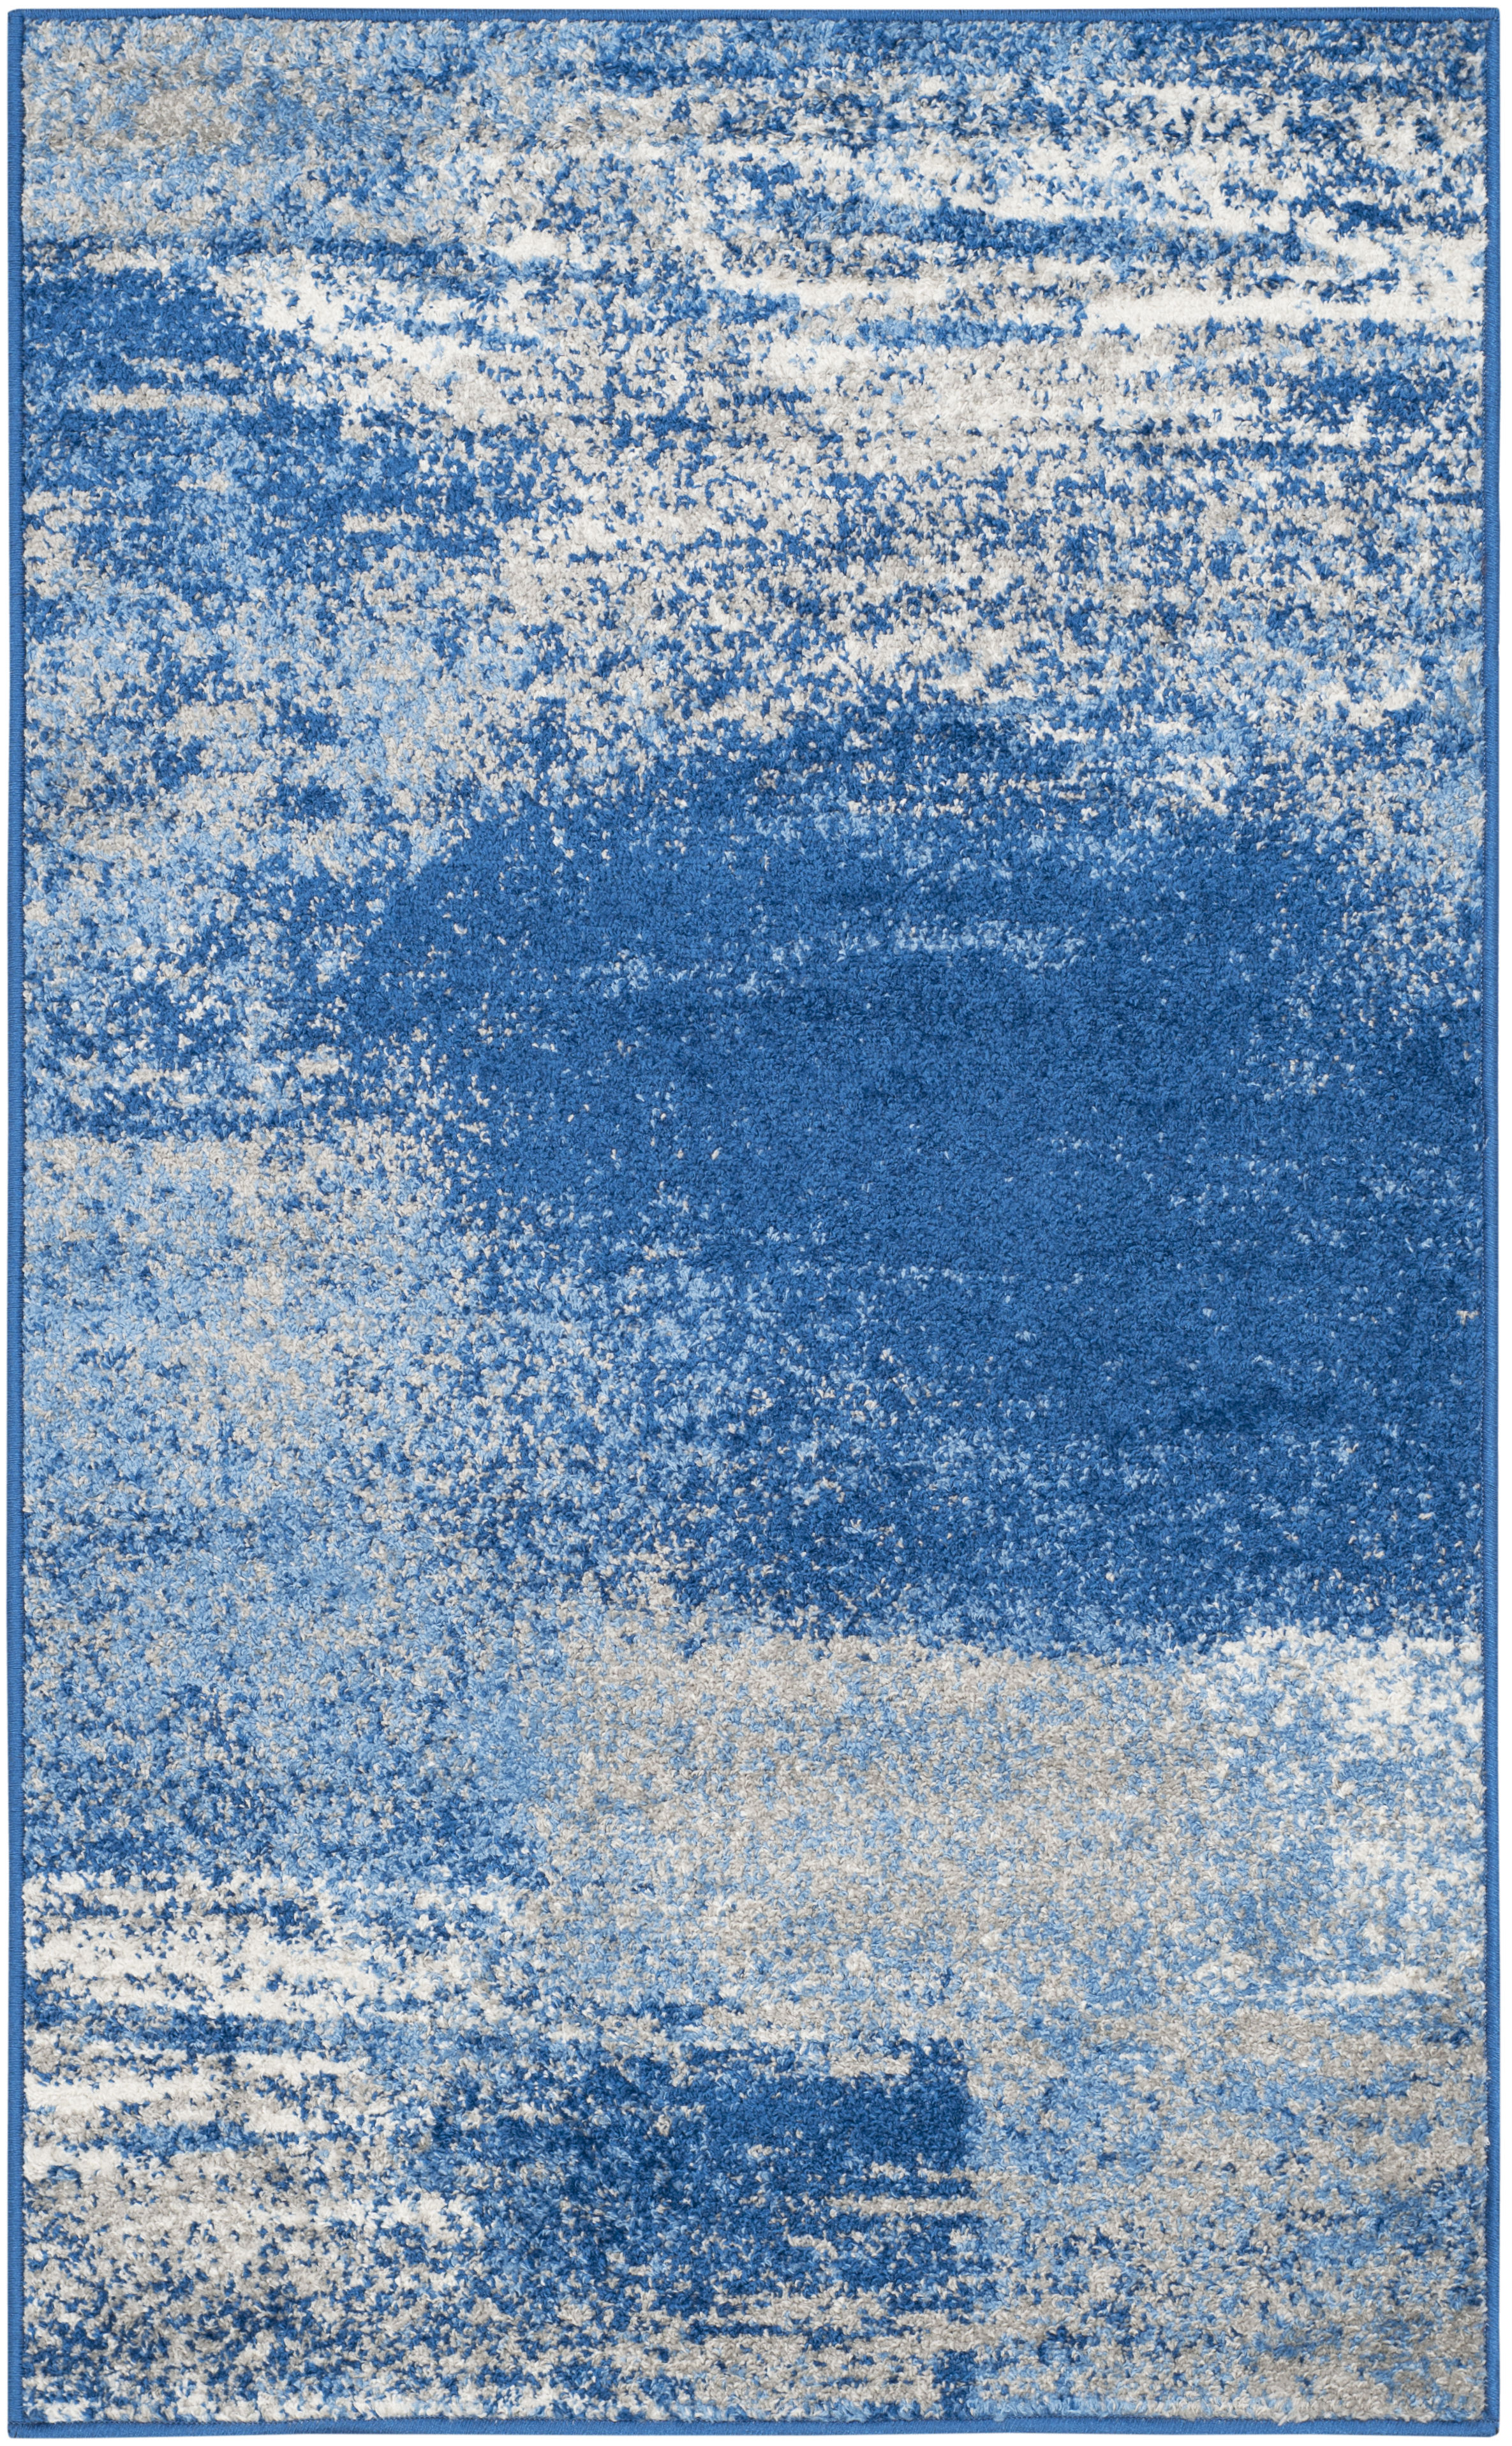 Tapis de salon interieur en argent & bleu, 91 x 152 cm